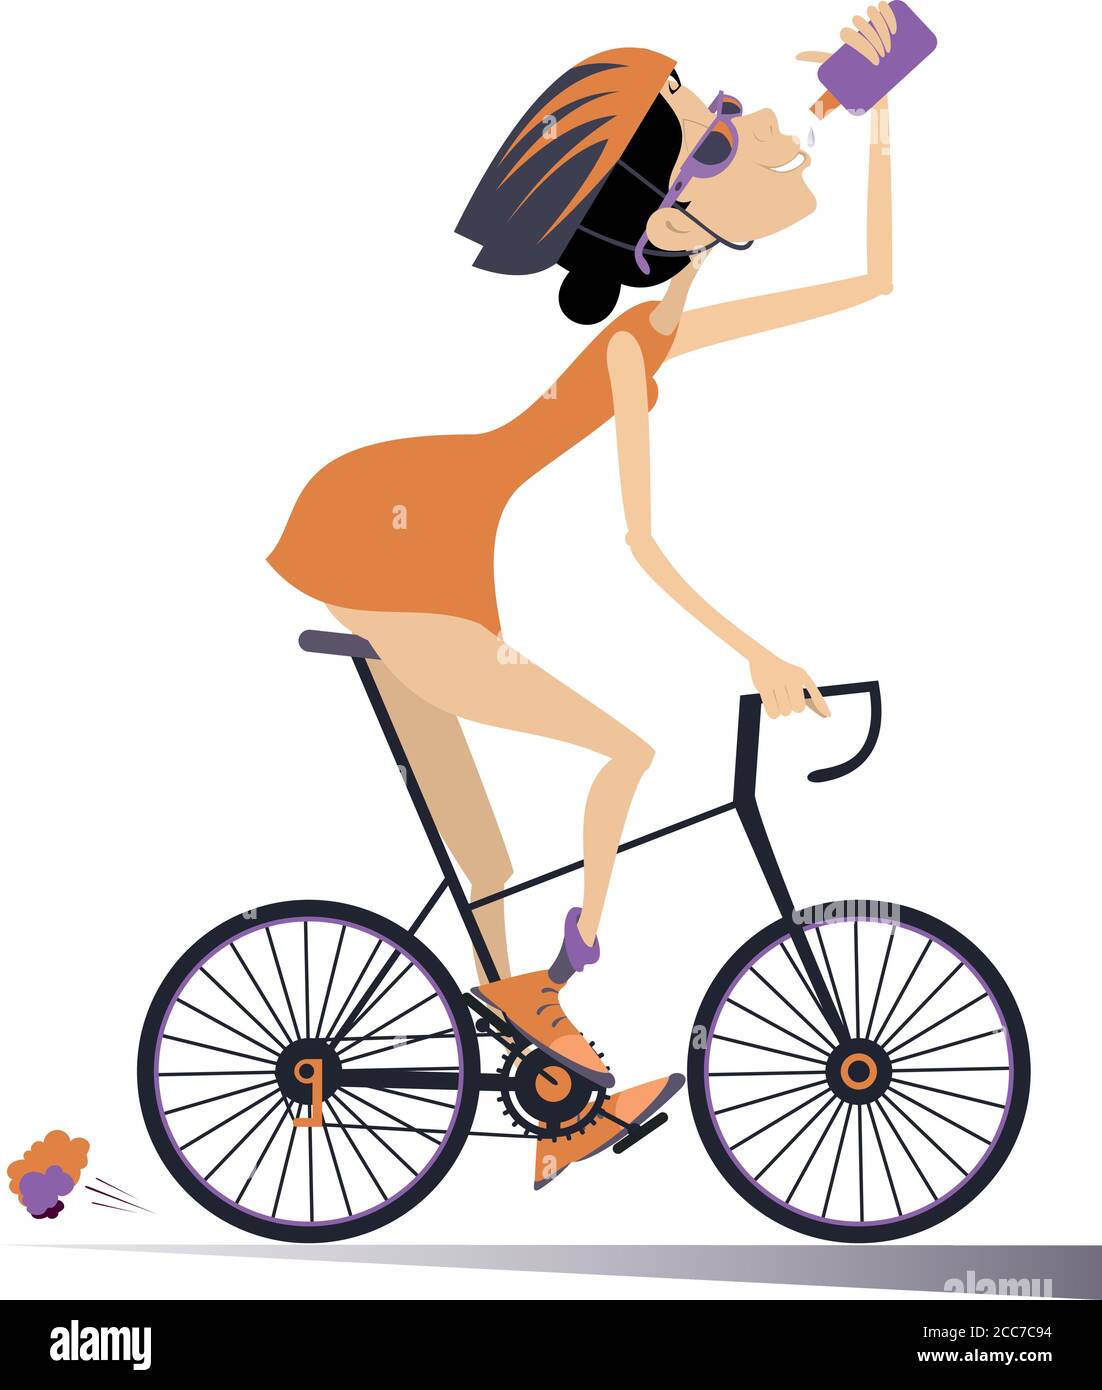 Radfahrer fährt ein Fahrrad und trinkt Wasser isoliert Illustration.Cartoon  Radfahrer Frau im Helm fährt ein Fahrrad und Getränke isoliert Auf weißem  illustrr Stock-Vektorgrafik - Alamy